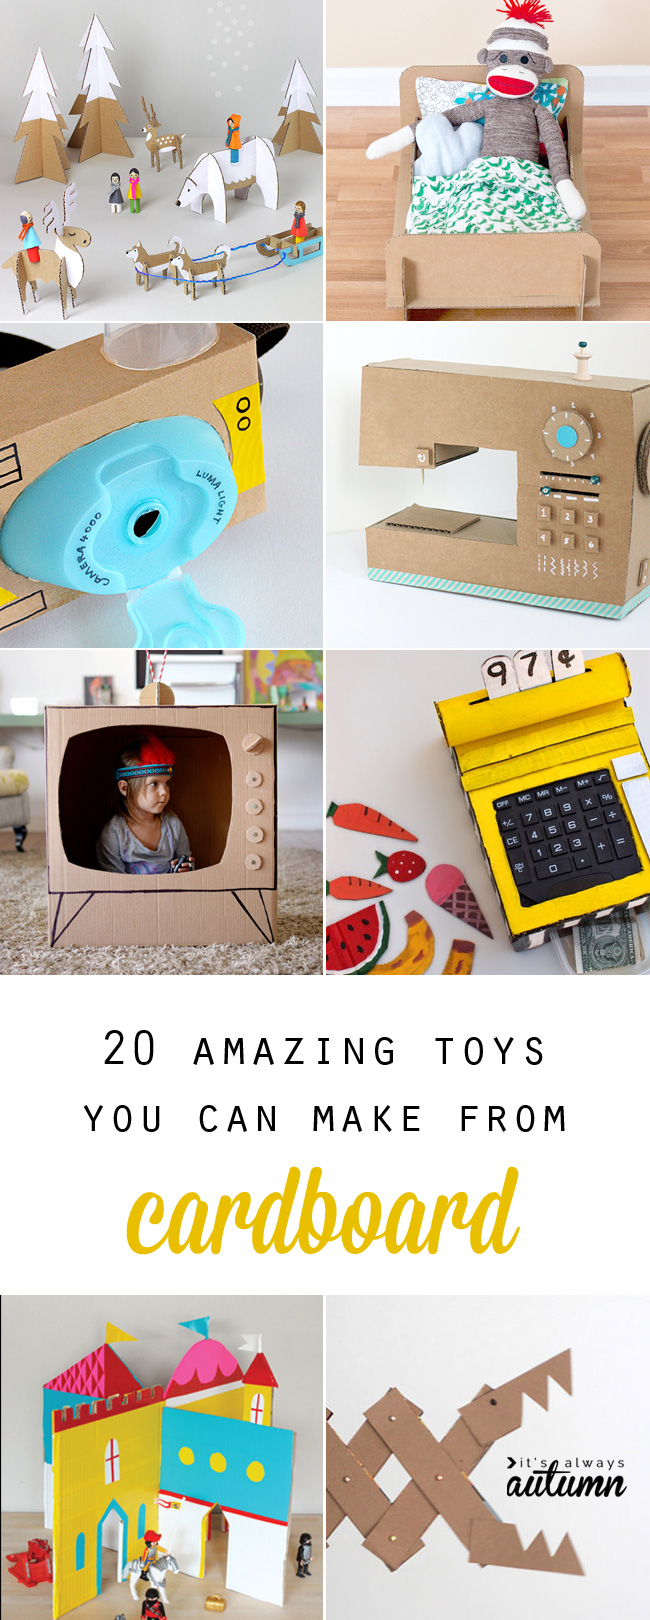 collage of fun cardboard toys